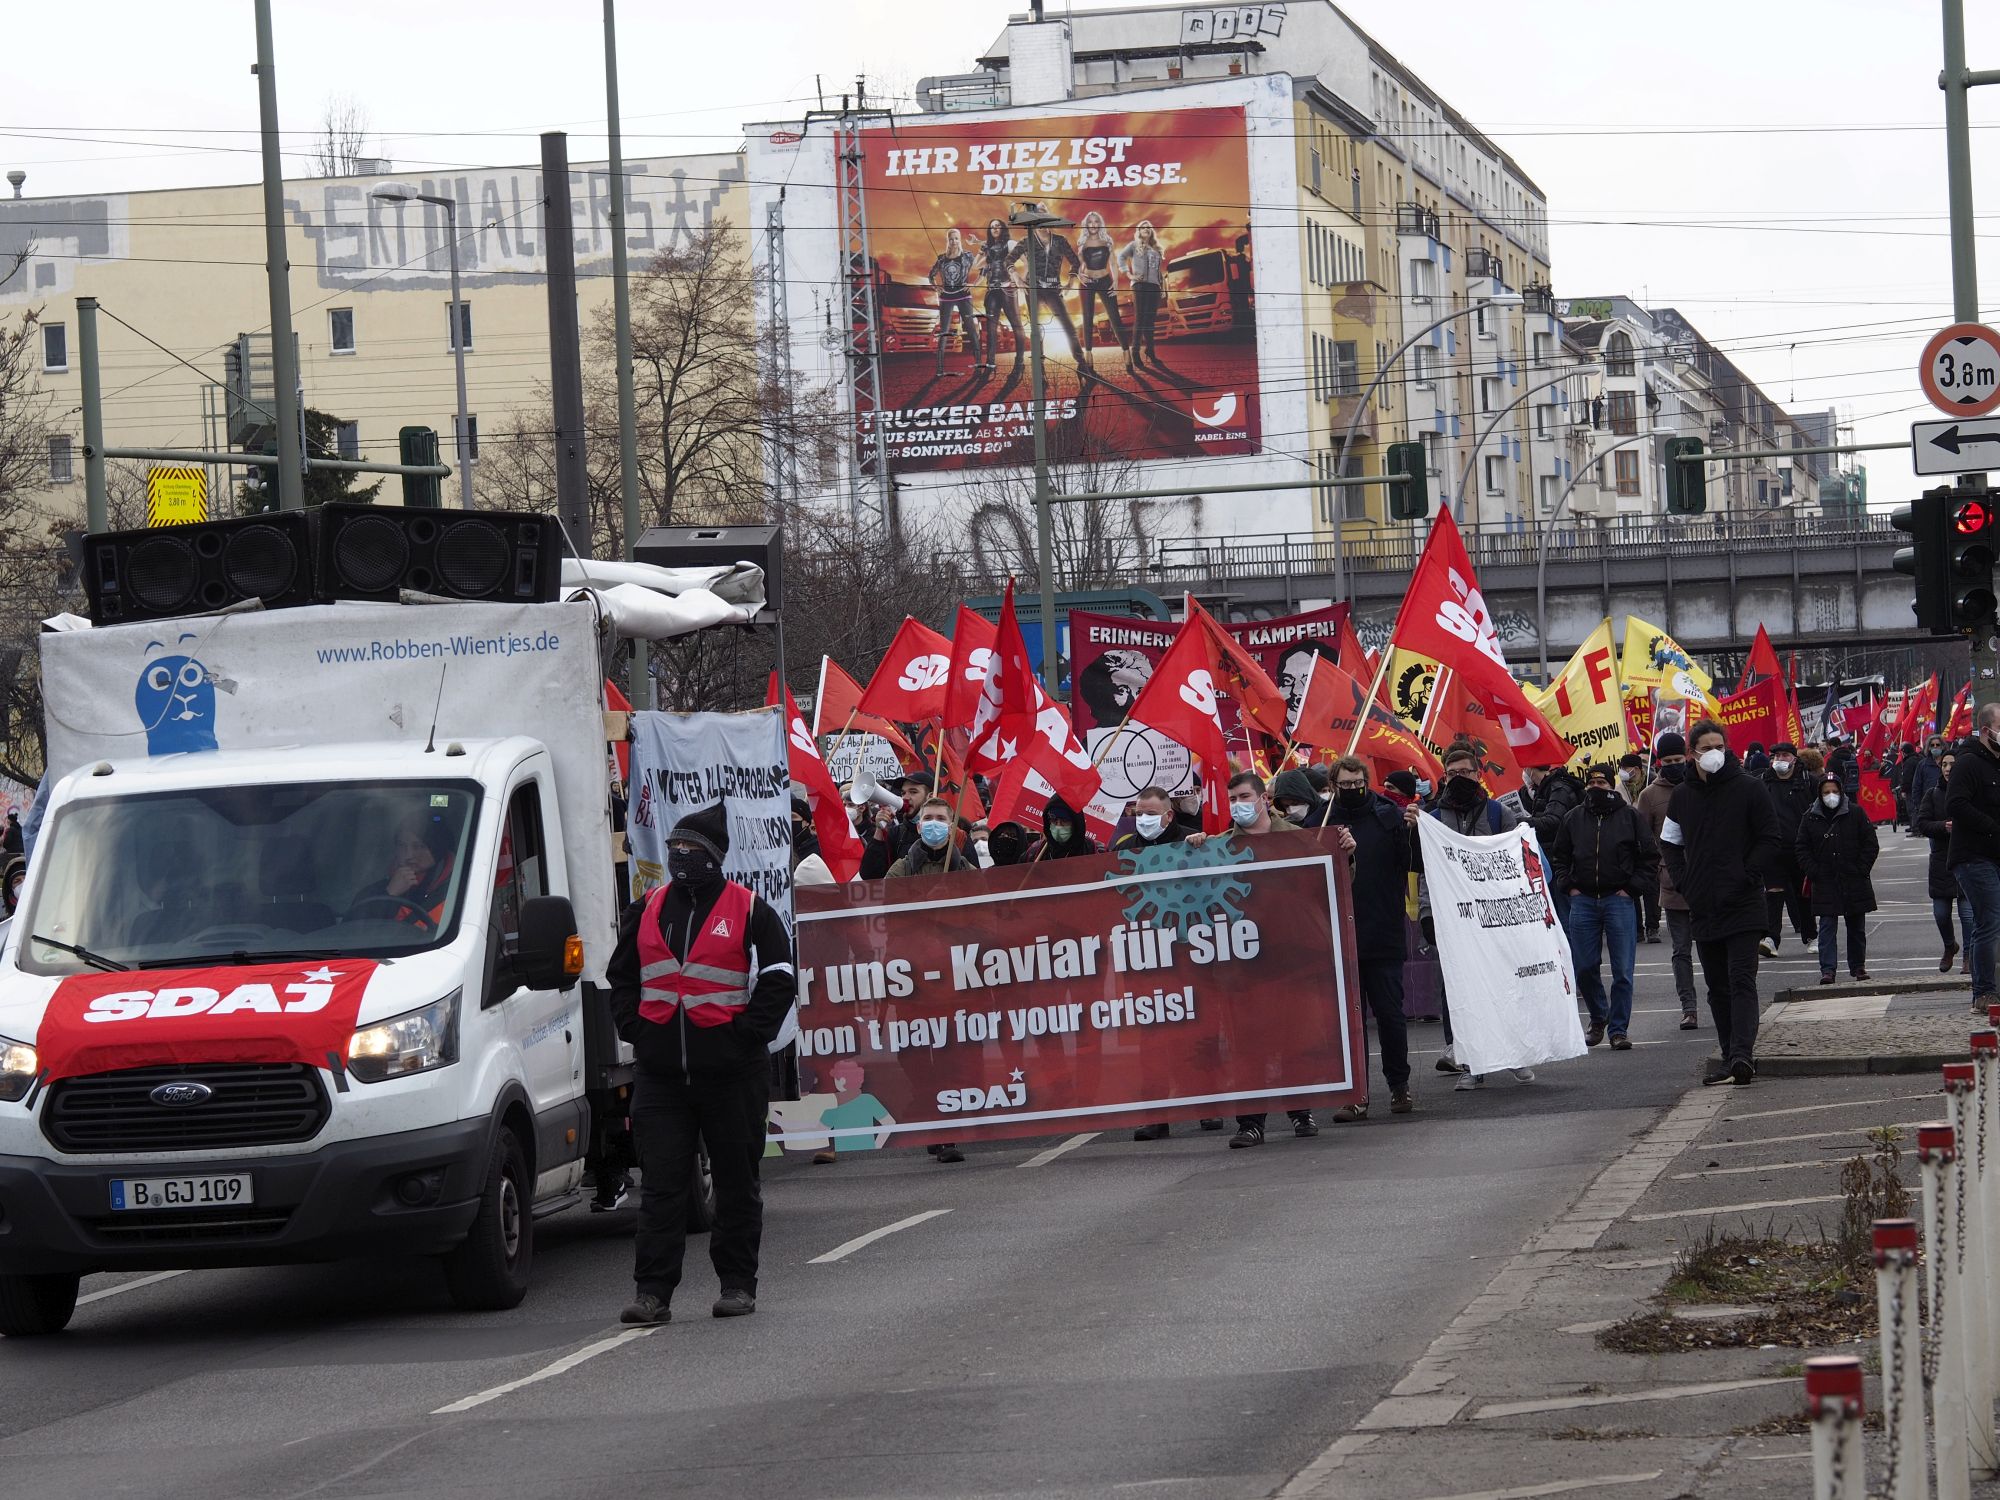 Frank Klopperschlaeger 7 - Rosa & Karl 2021 - Demonstration, Geschichte der Arbeiterbewegung - Im Bild